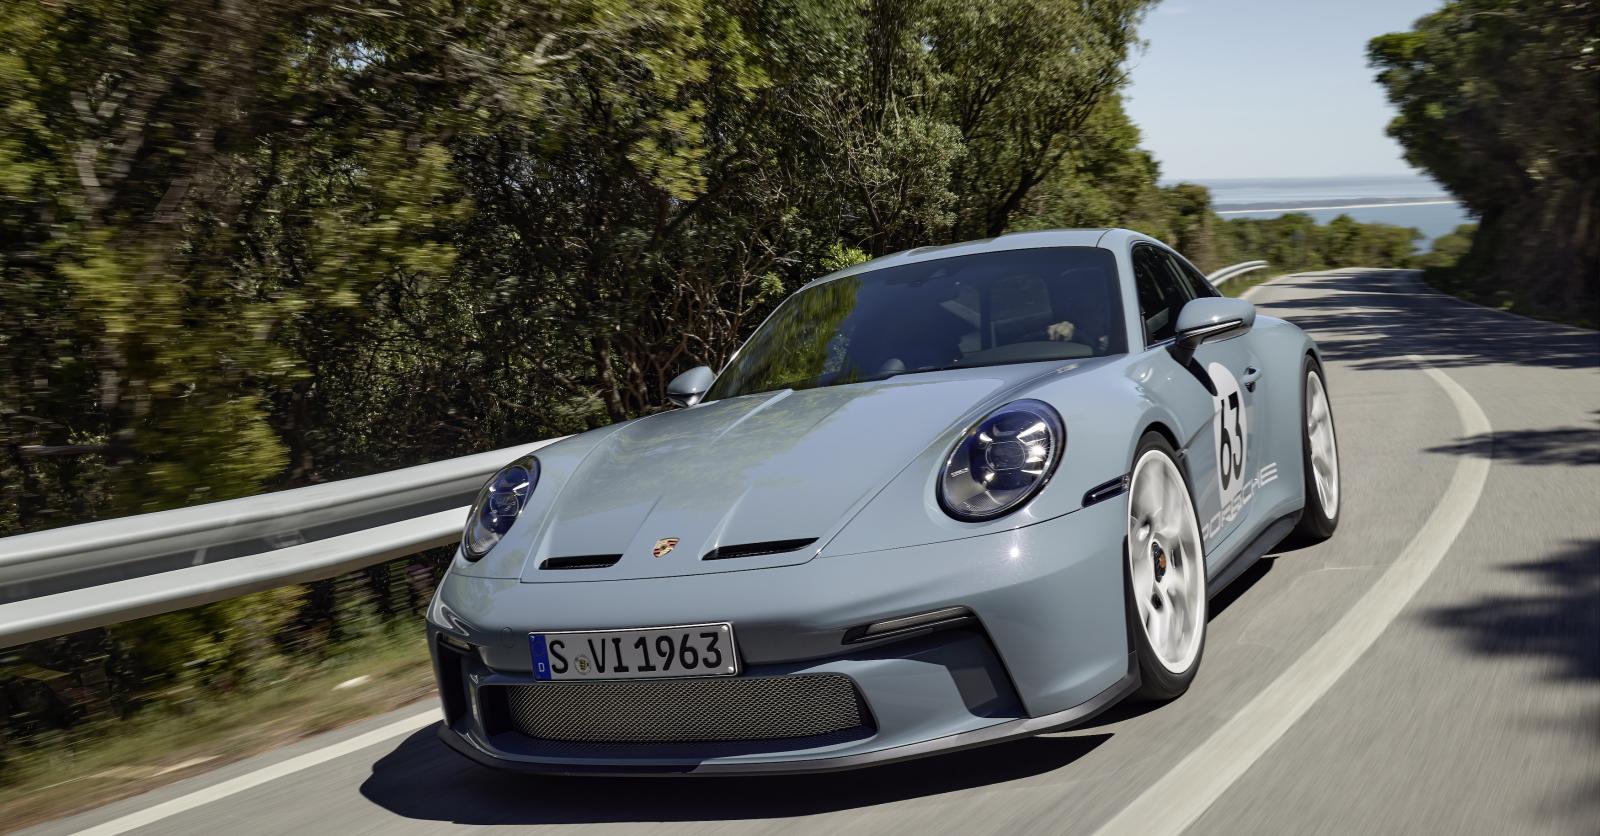 Porsche 911 S/T, la préférée des puristes… très riches